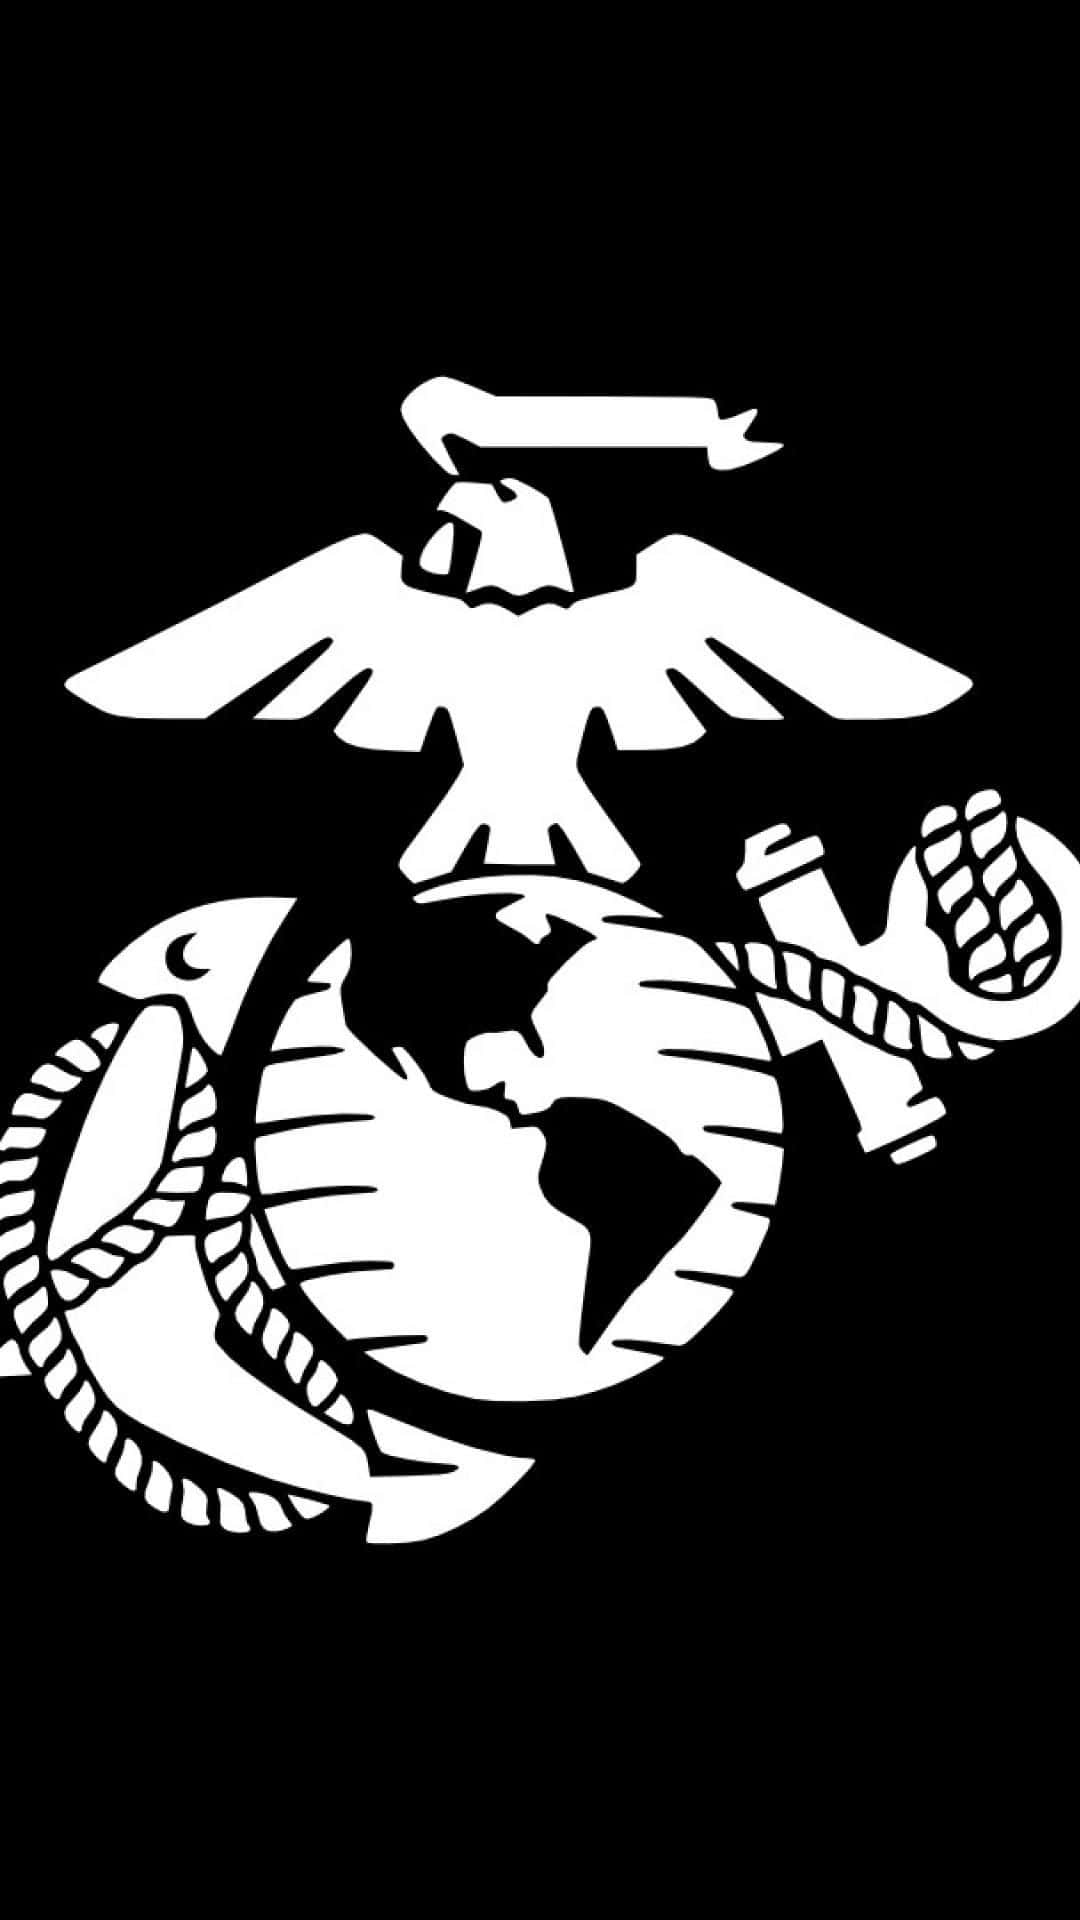 Usmarine Corps-emblemet Klistermärke Wallpaper